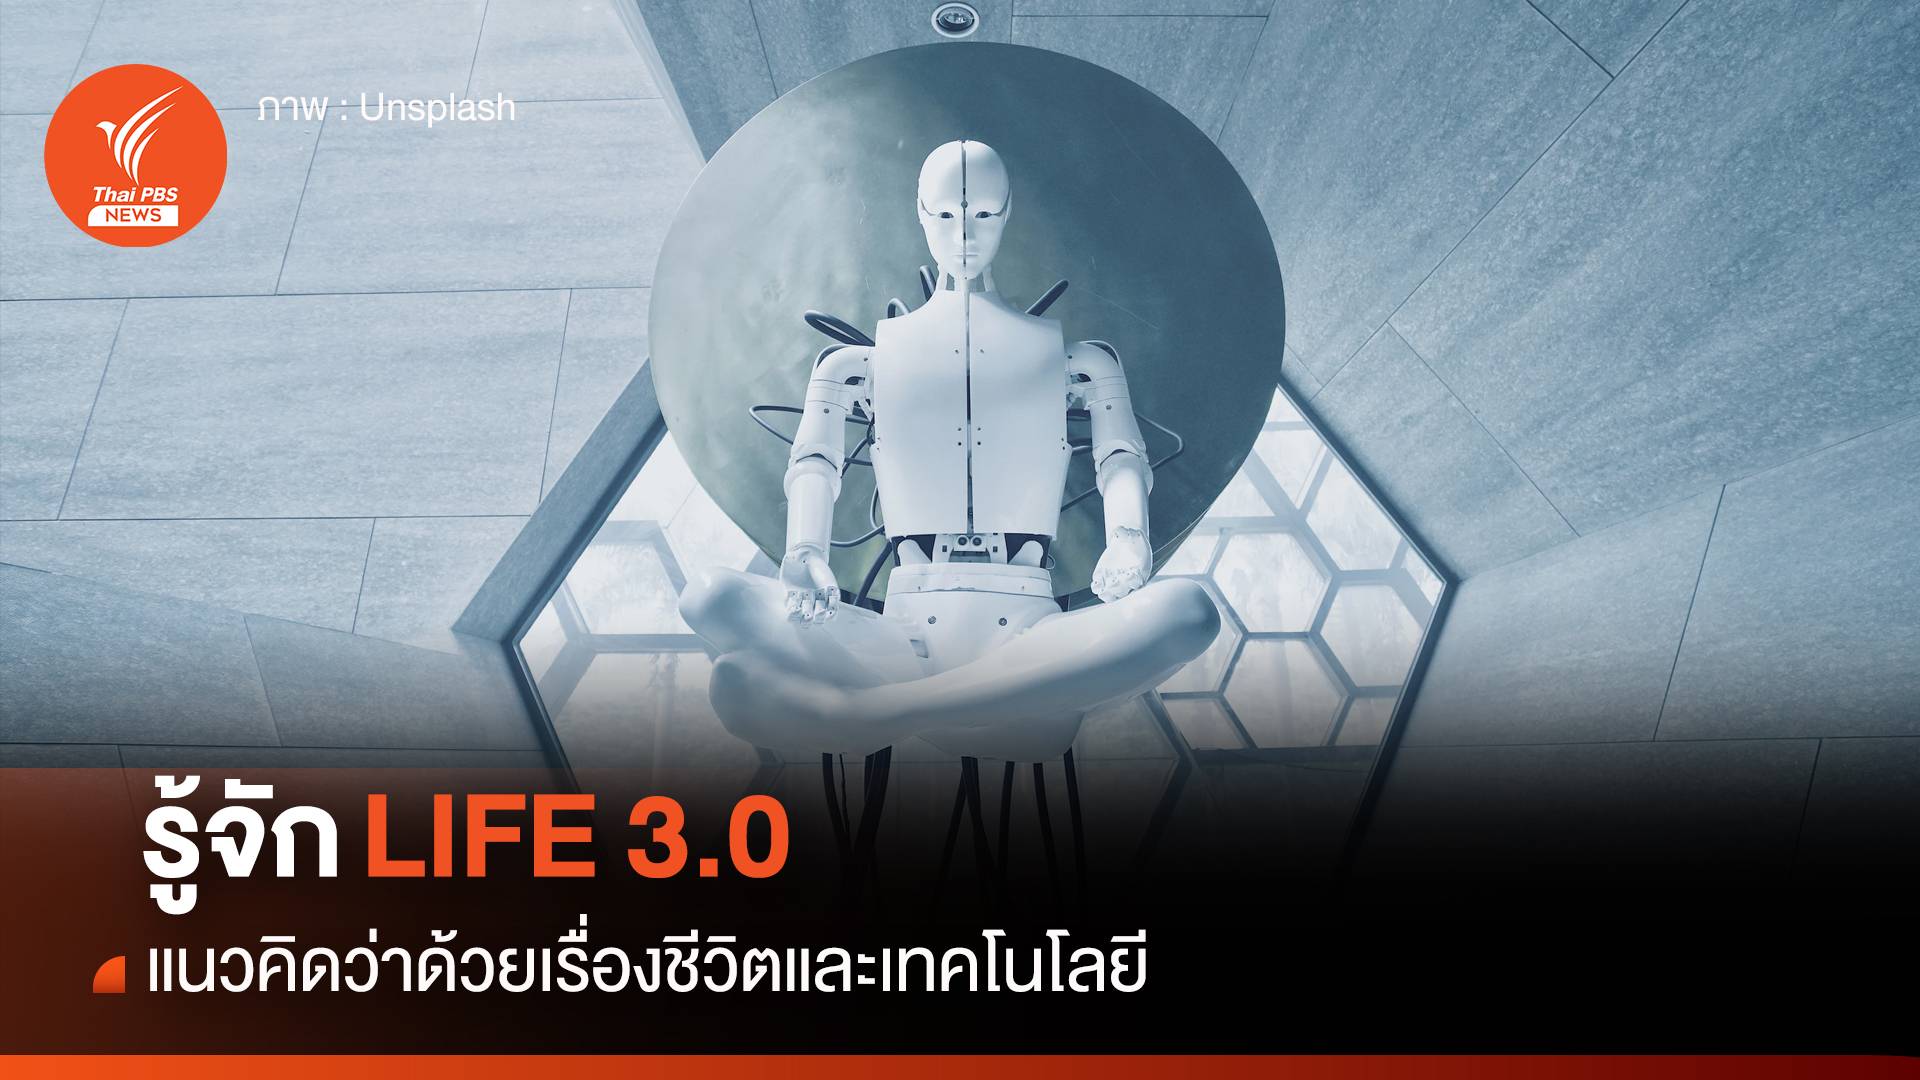 Life 3.0 แนวคิดว่าด้วยเรื่อง "ชีวิตและเทคโนโลยี"